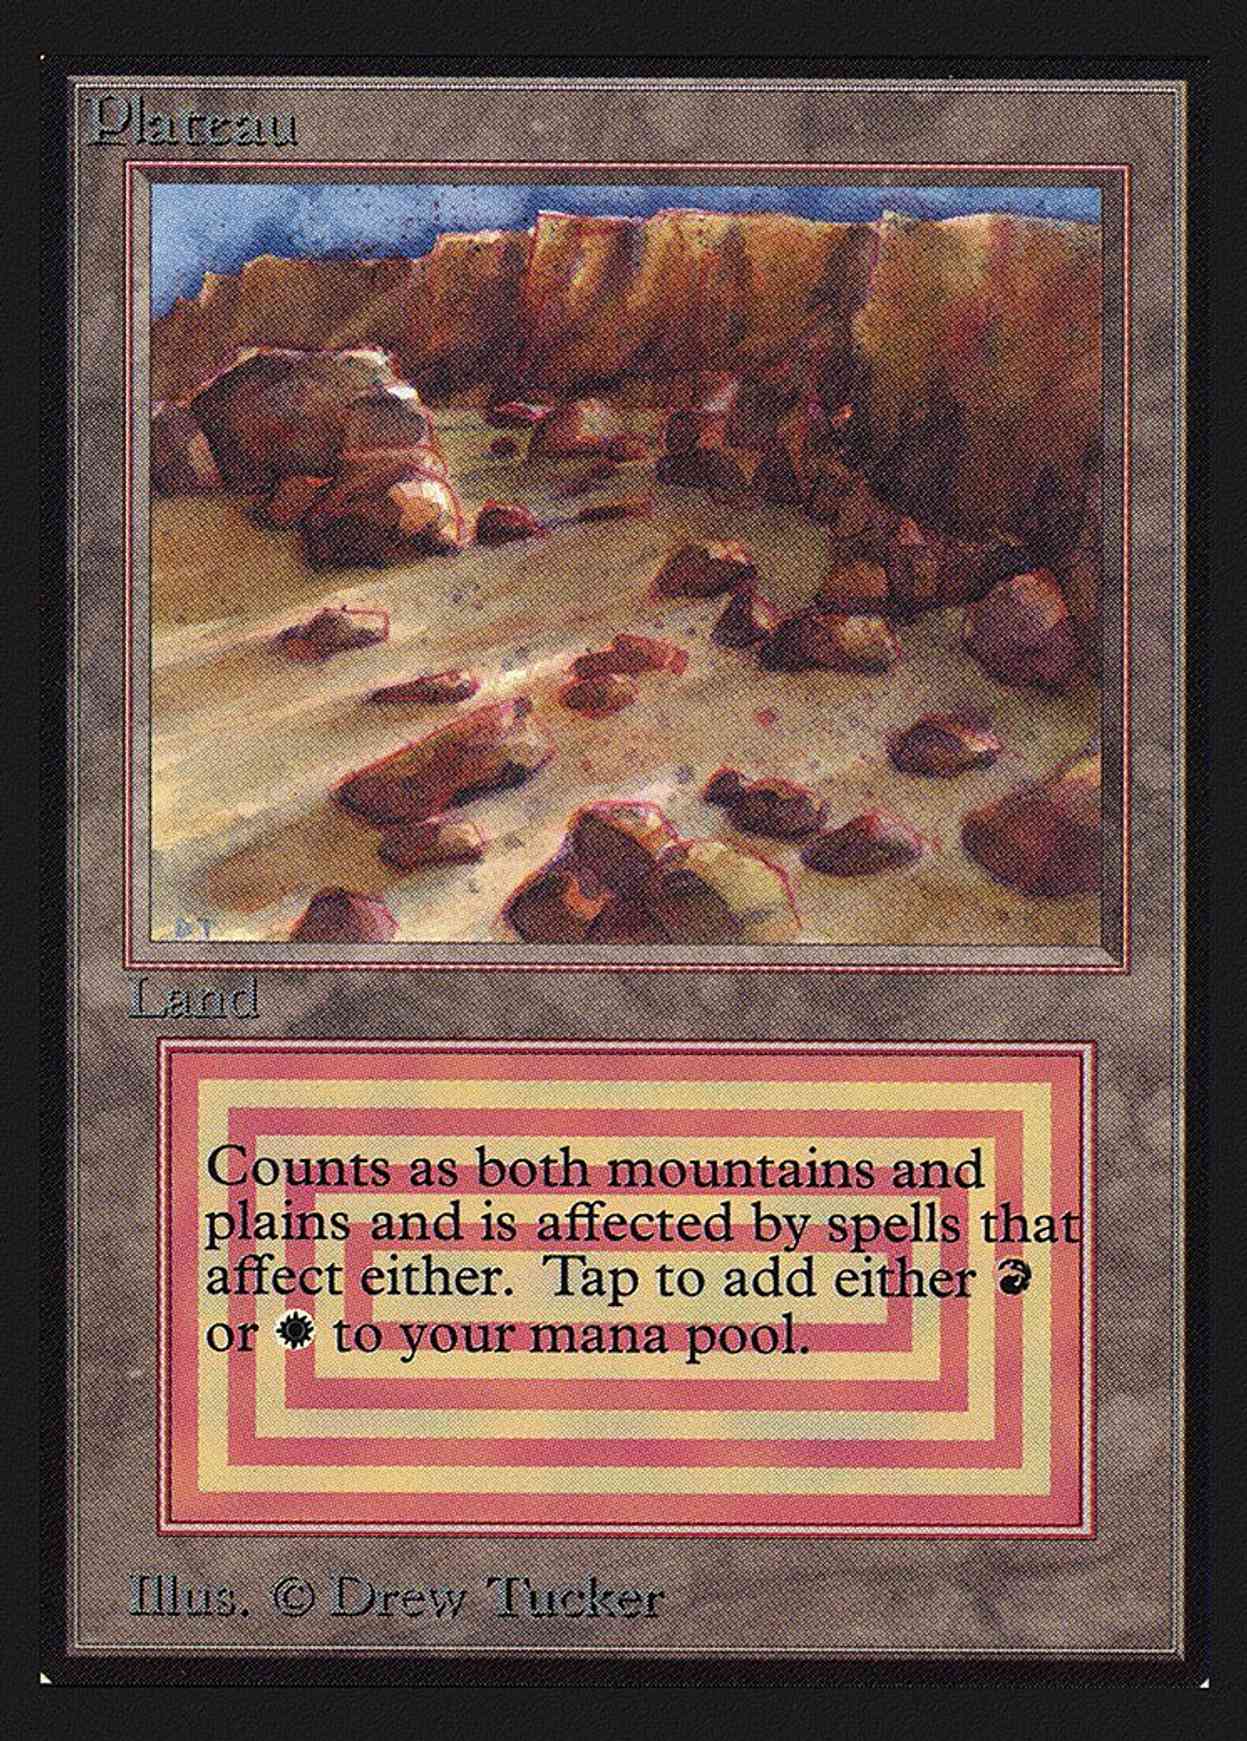 Plateau (CE) magic card front